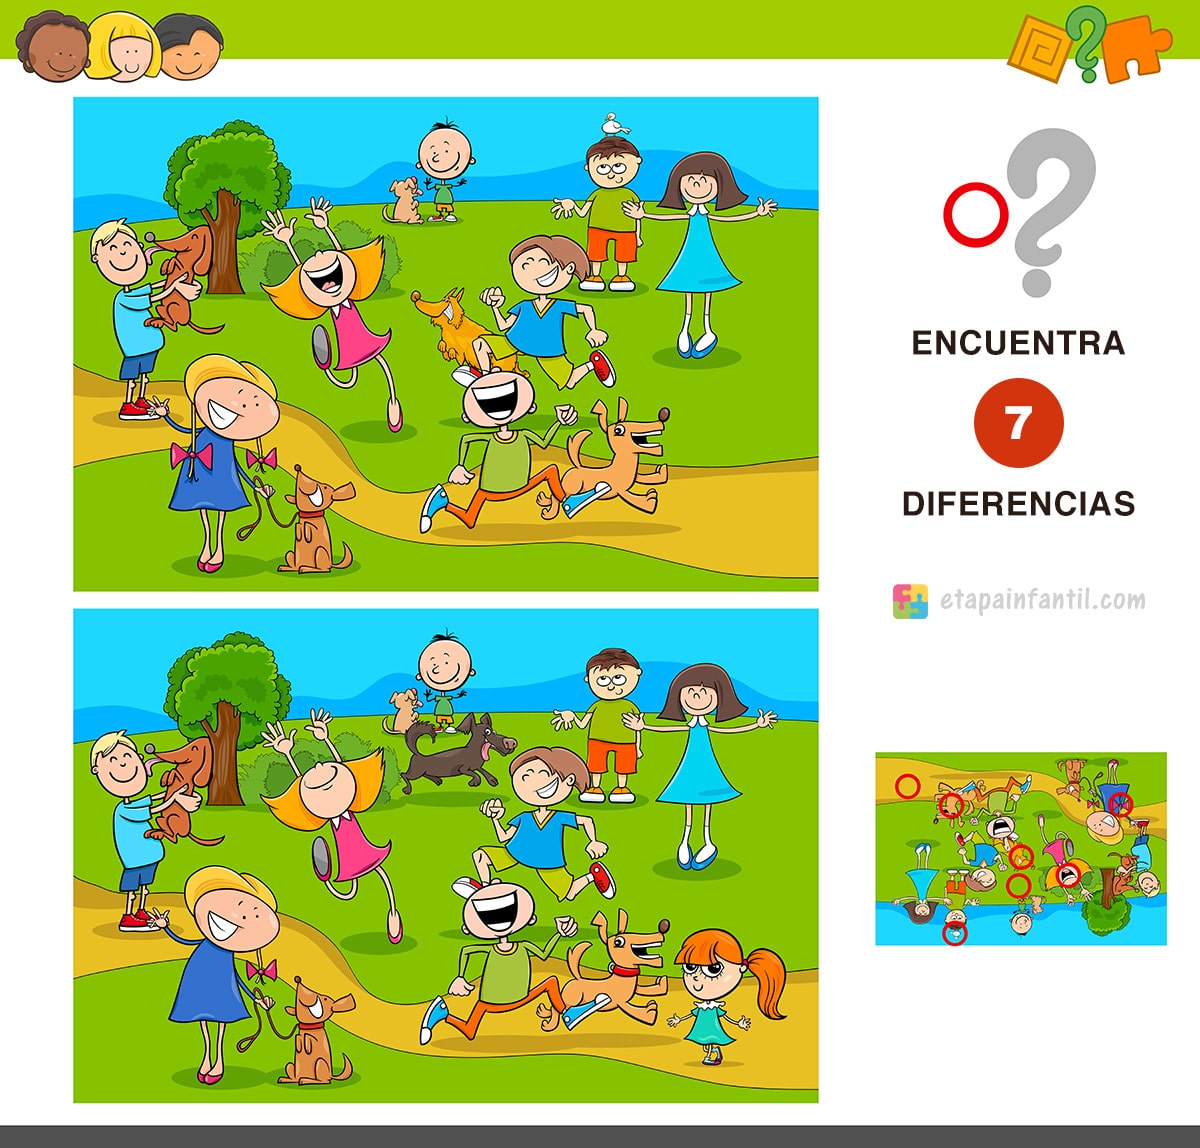 Encuentra las diferencias, un juego para estimular el desarrollo infantil -  Etapa Infantil